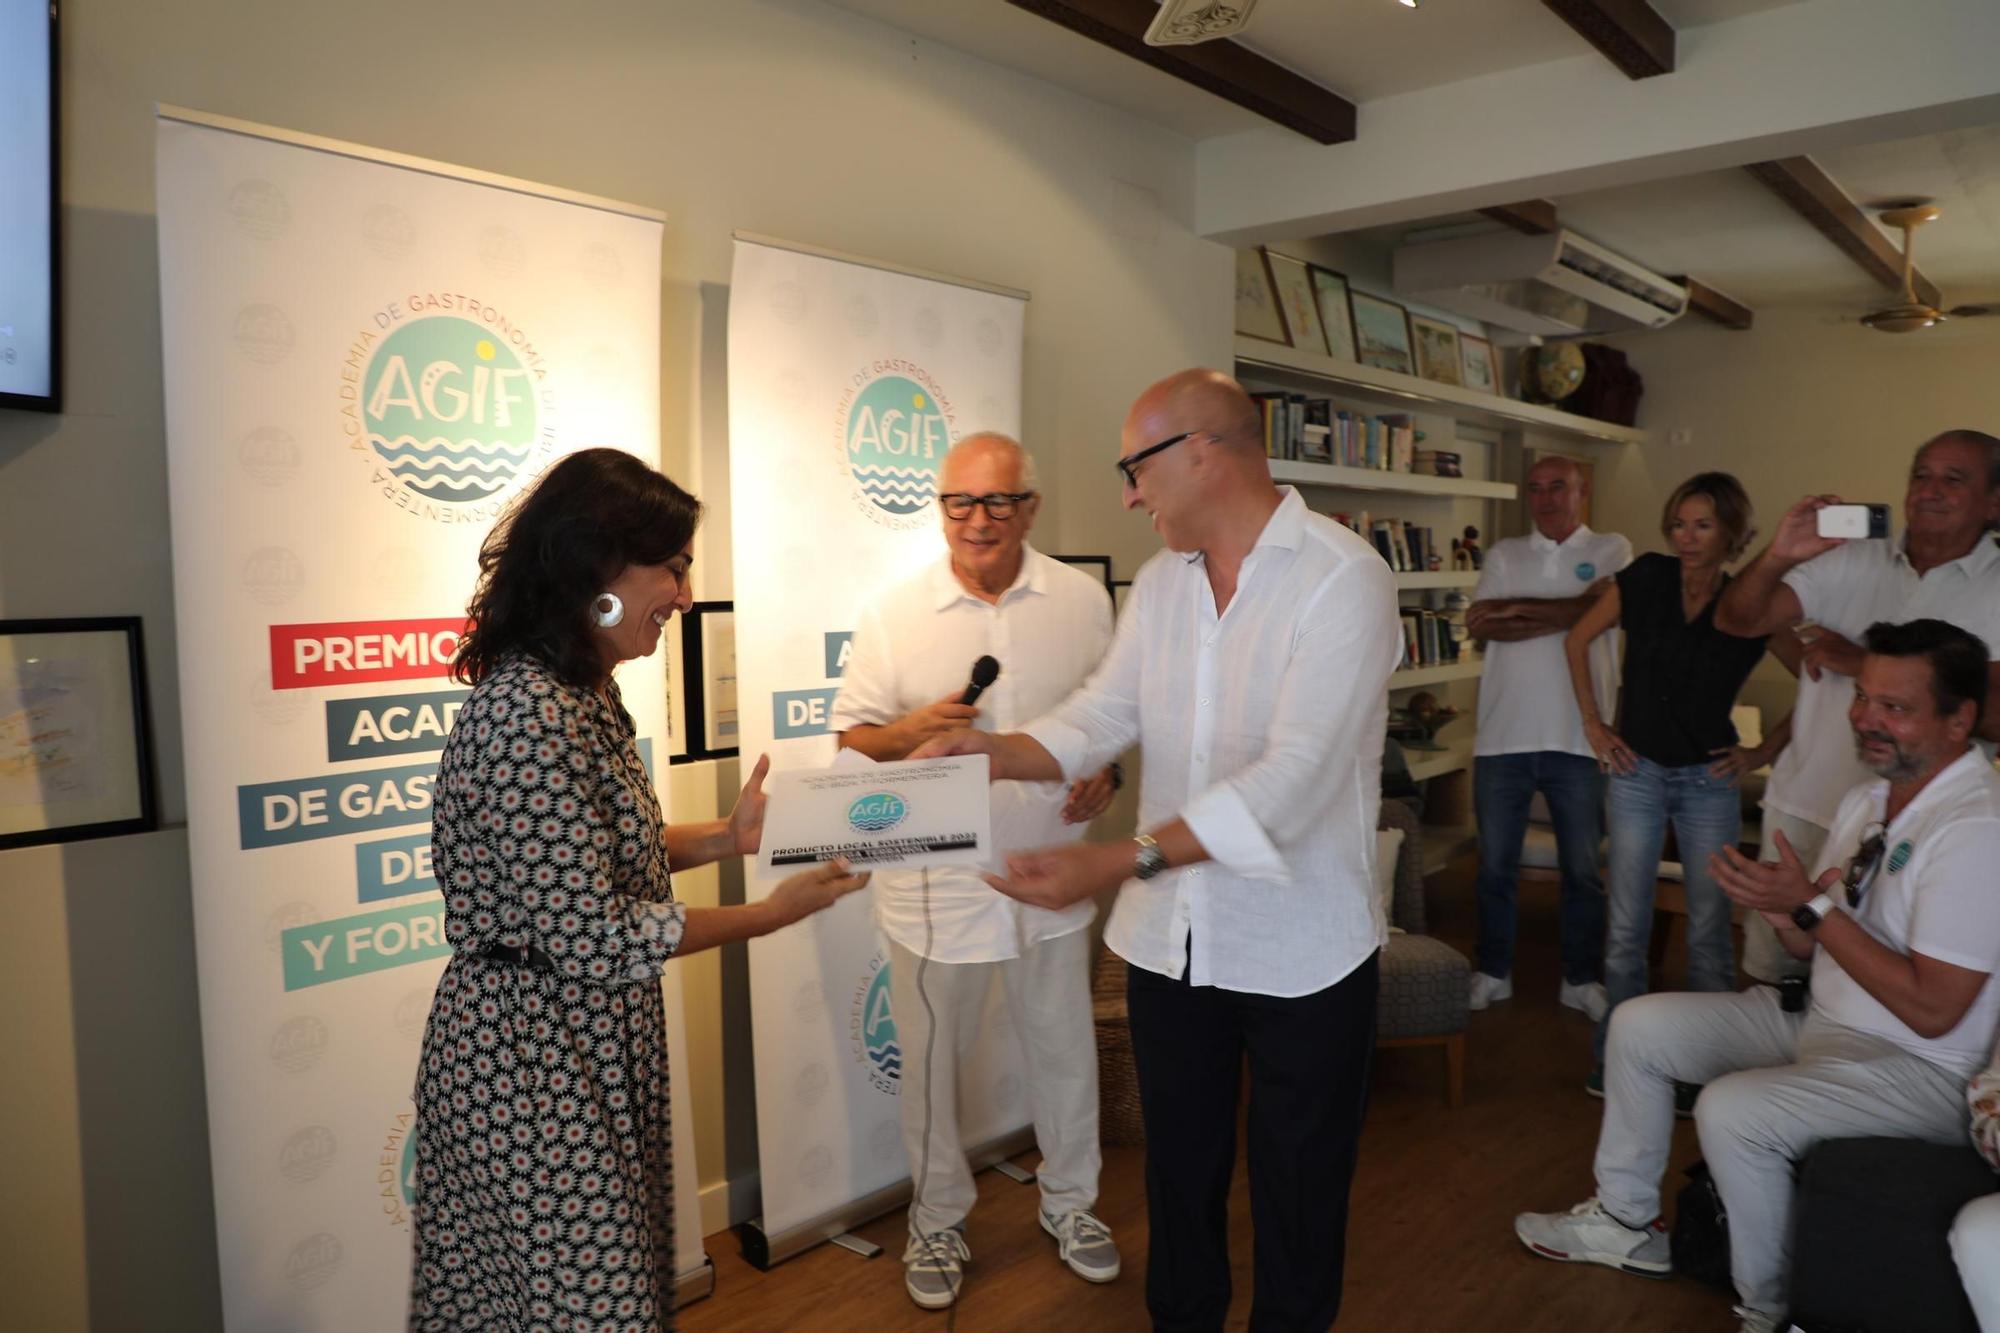 Galería: Premios de la Academia de Gastronomía a la tradición, la fusión y el producto local de Formentera